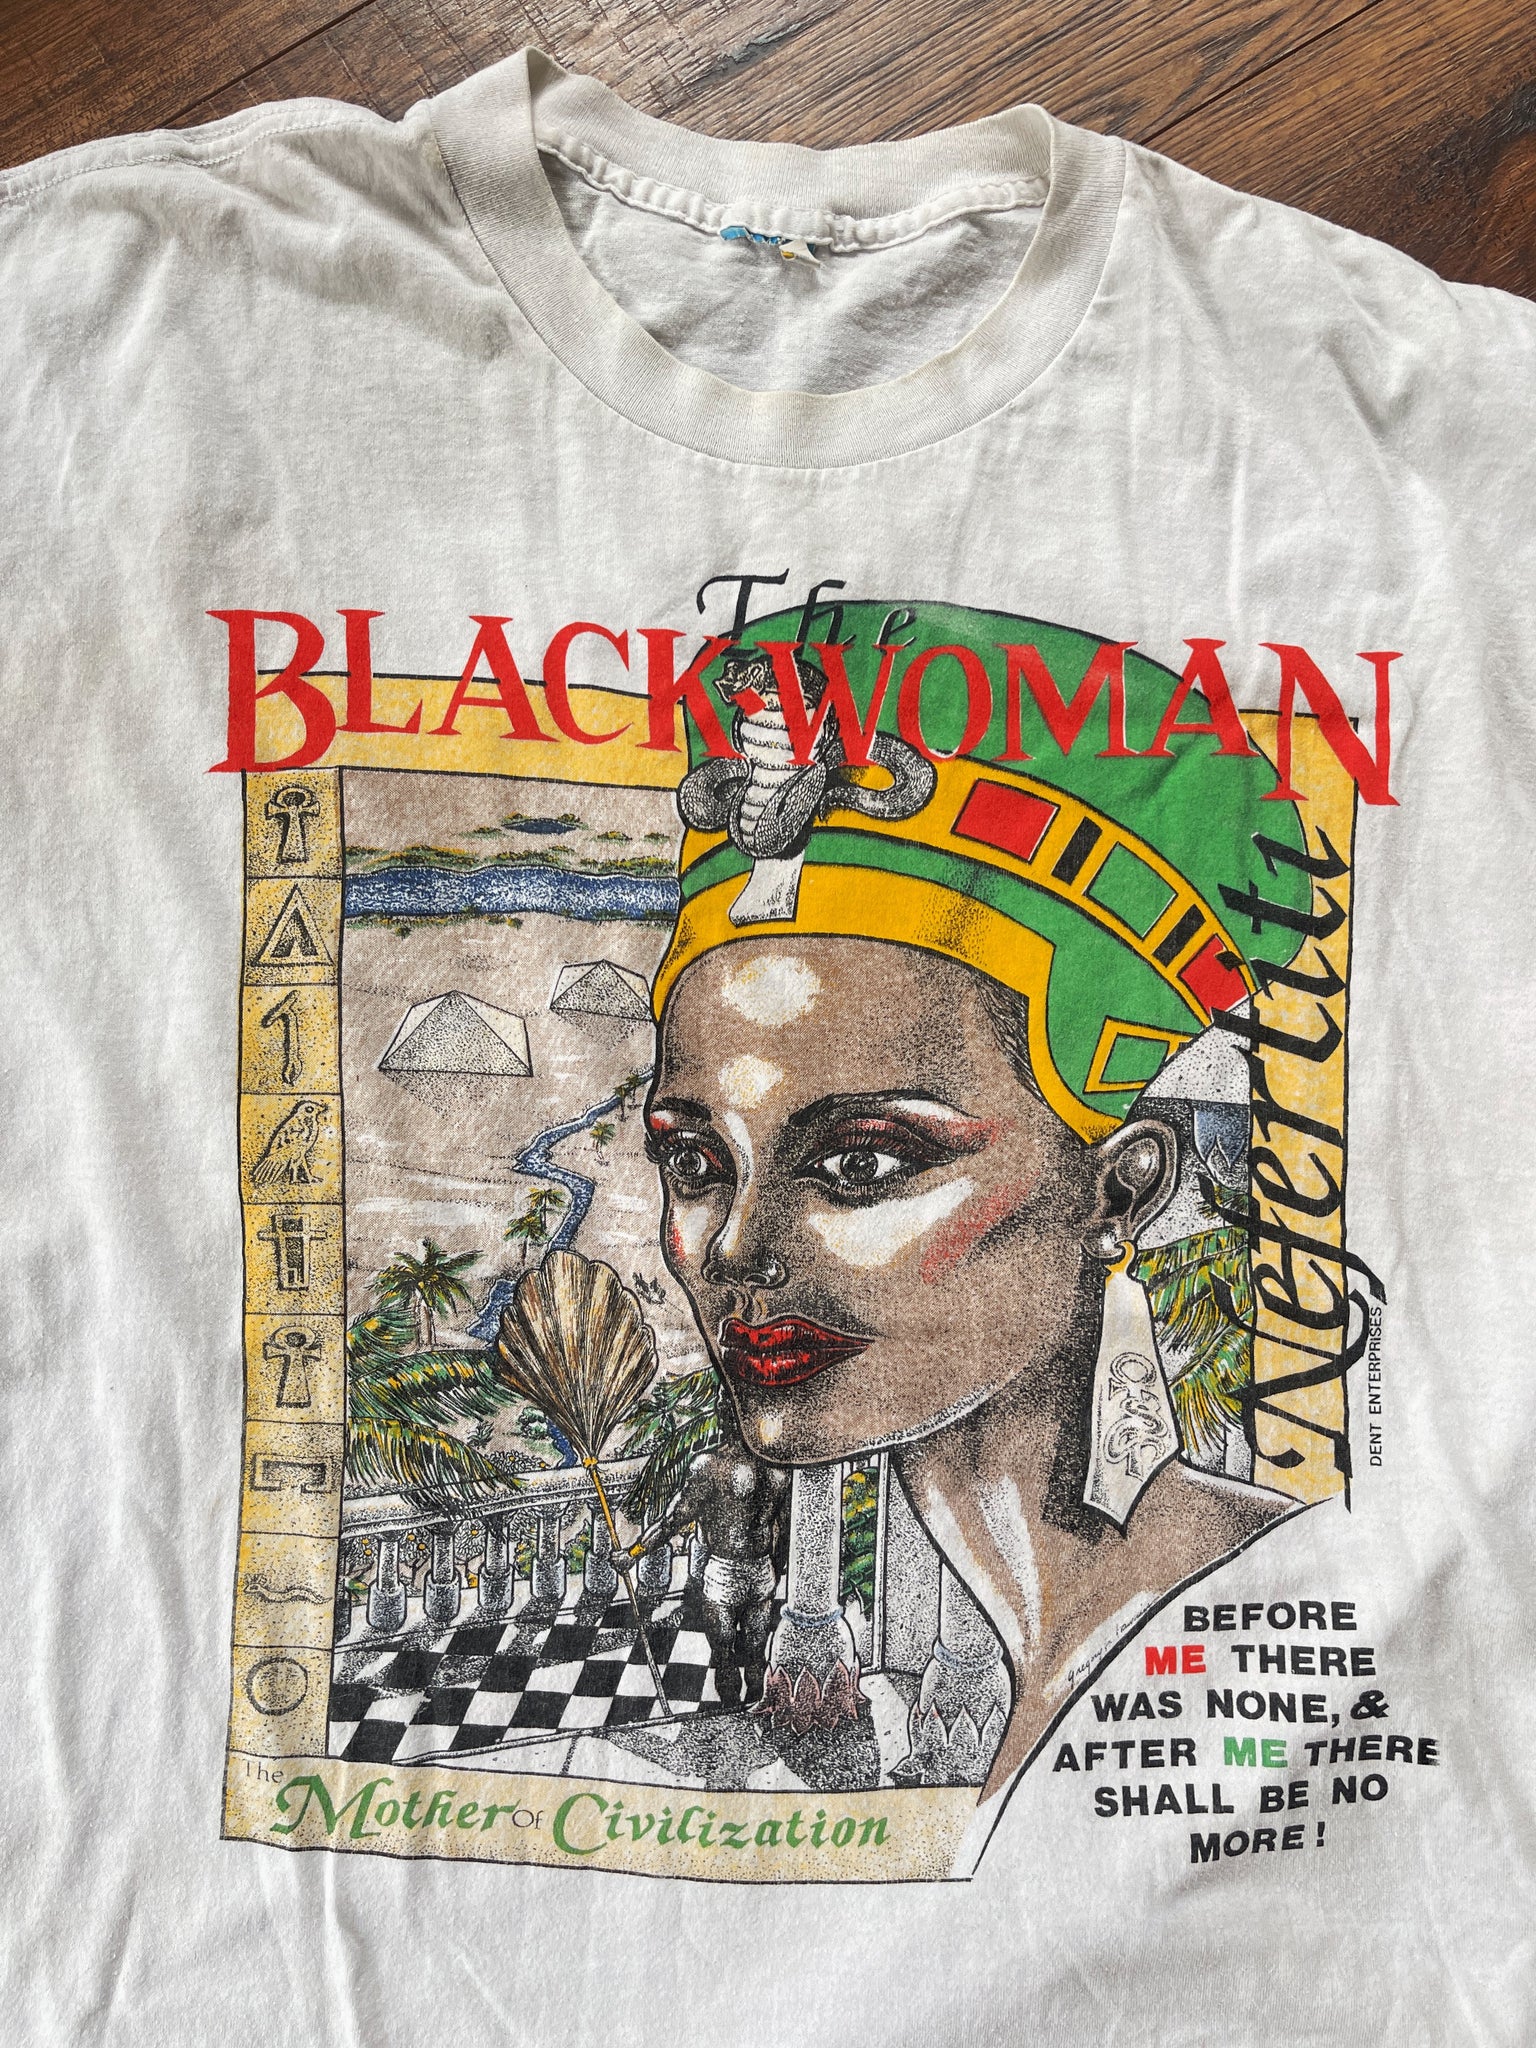 Vintage "Black Woman: Mother of Civilization” T-Shirt (1990's)